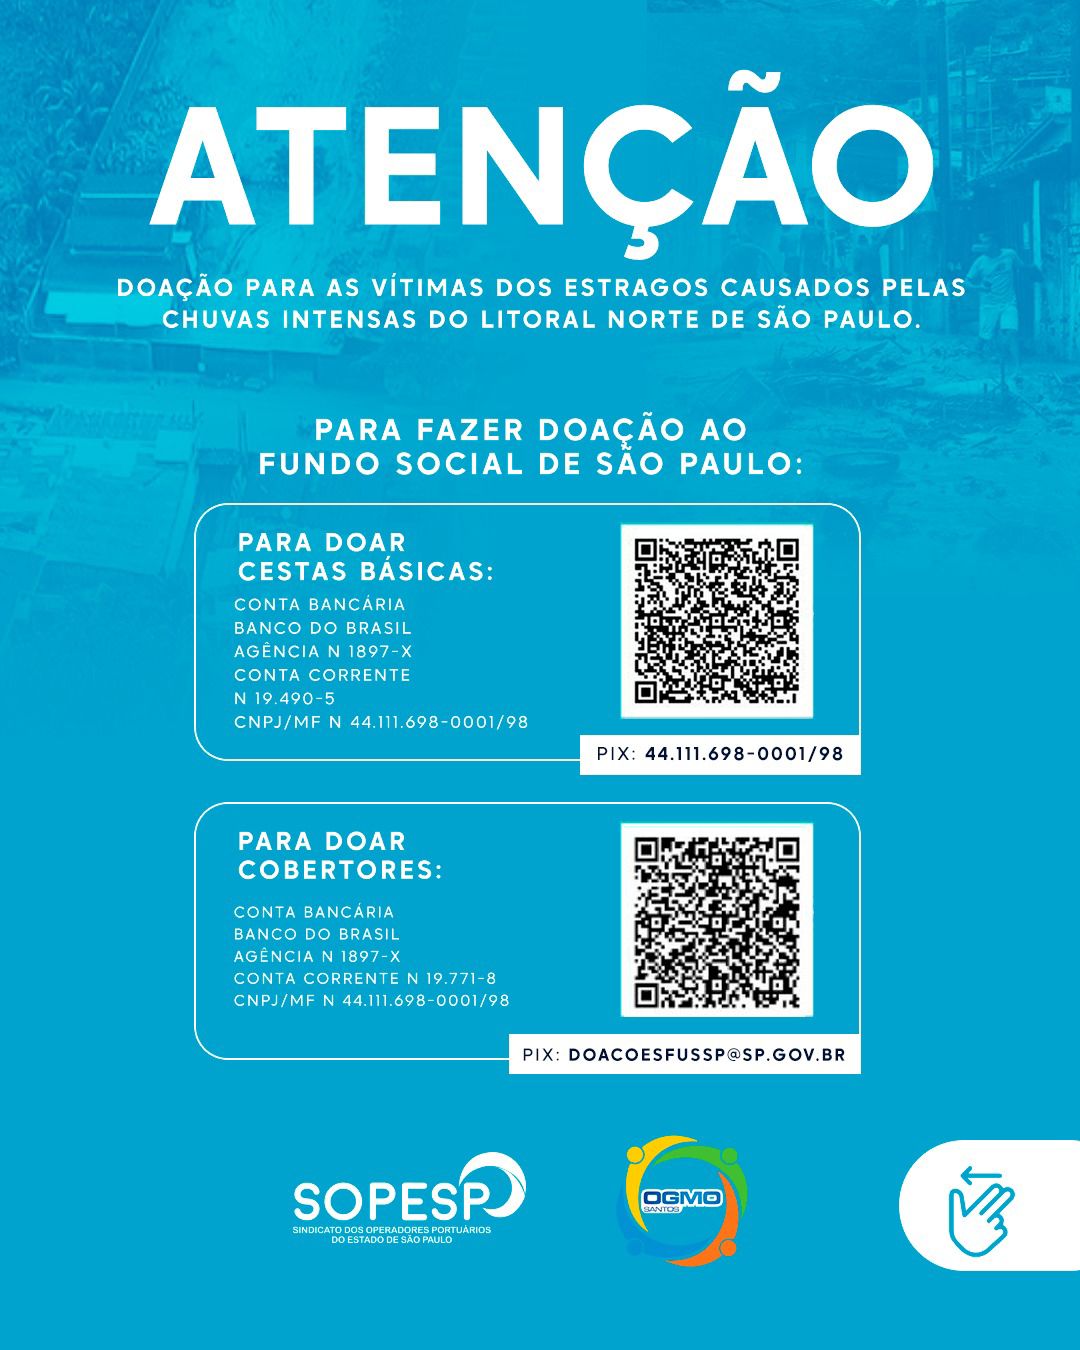 ATENÇÃO – Doação para as vítimas dos estragos causados pelas chuvas intensas do Litoral Norte de São Paulo